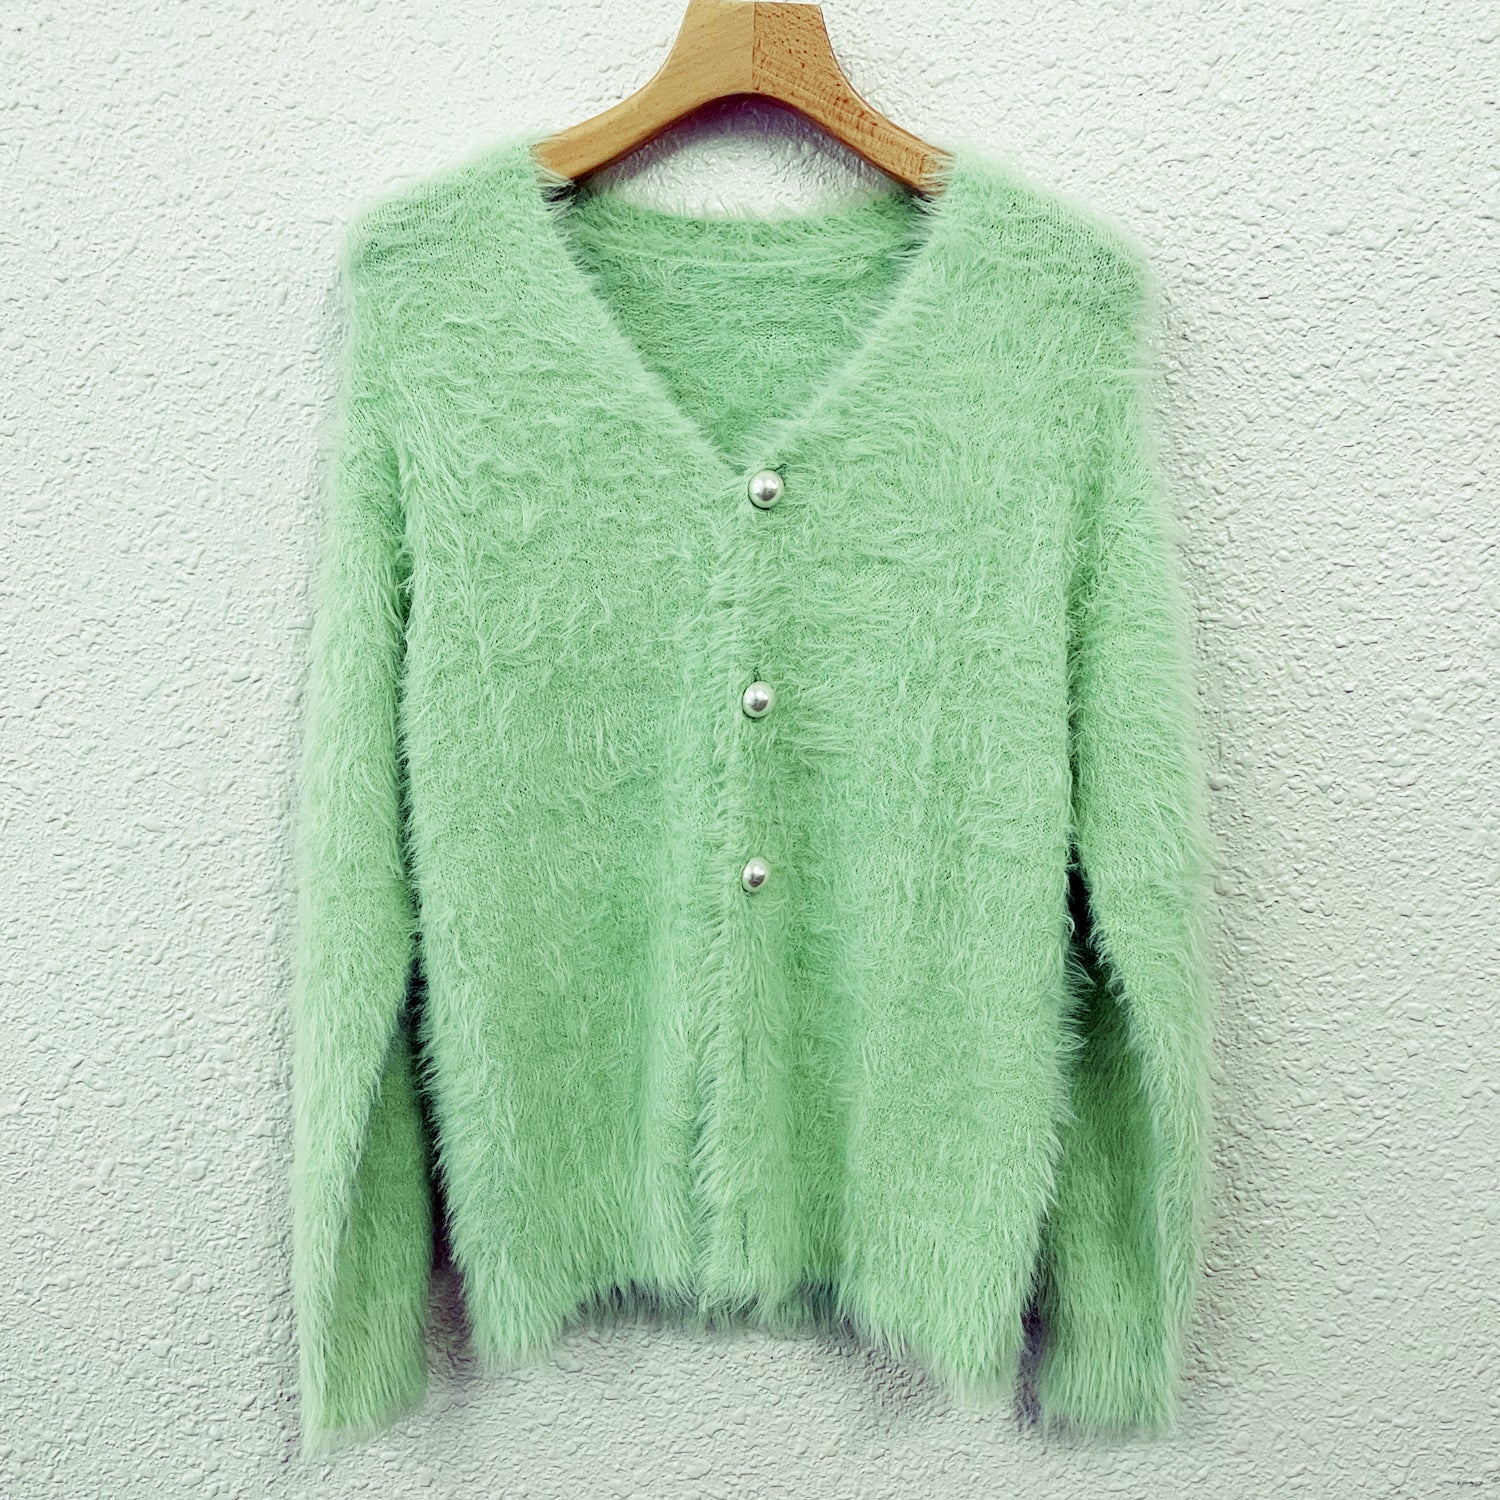 Women's Sweater Knit Cardigan Loose Coat Women